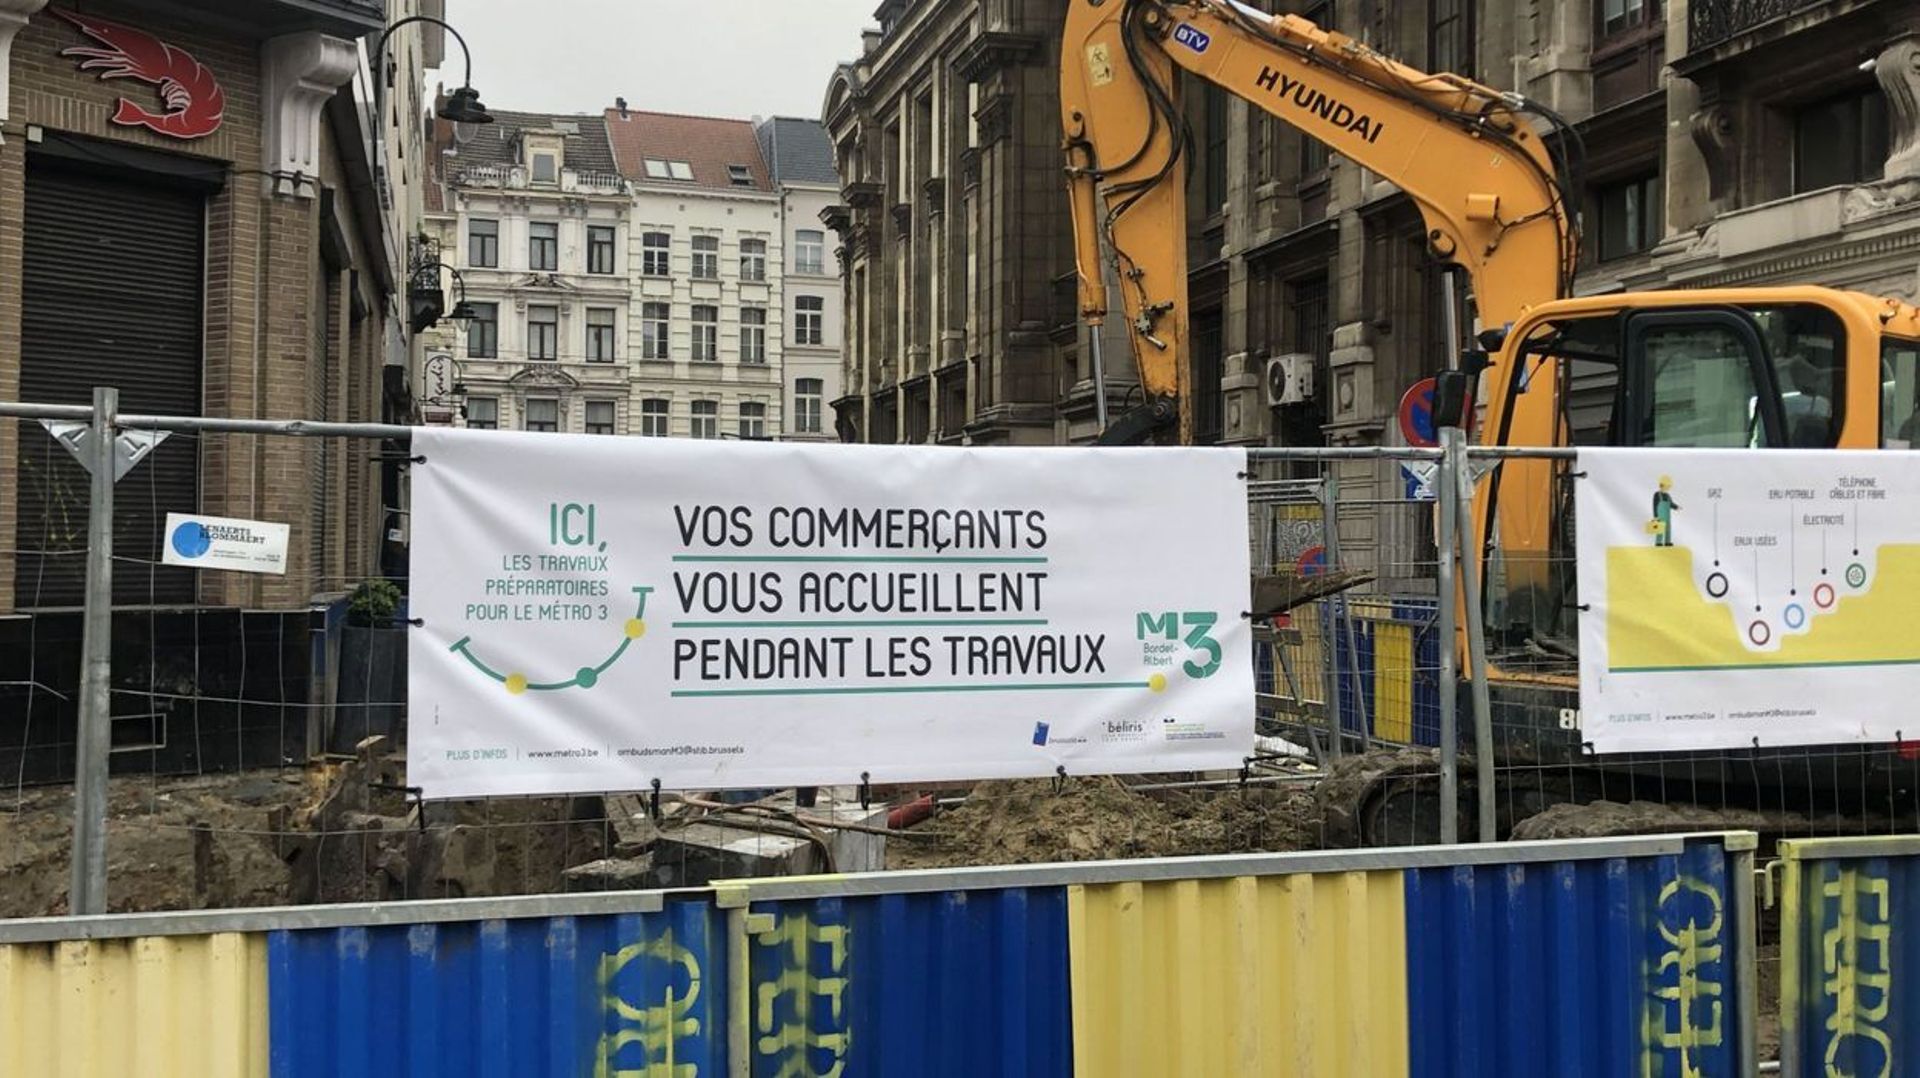 Bruxelles : Lancement du gros des travaux de la station Toots Thielemans